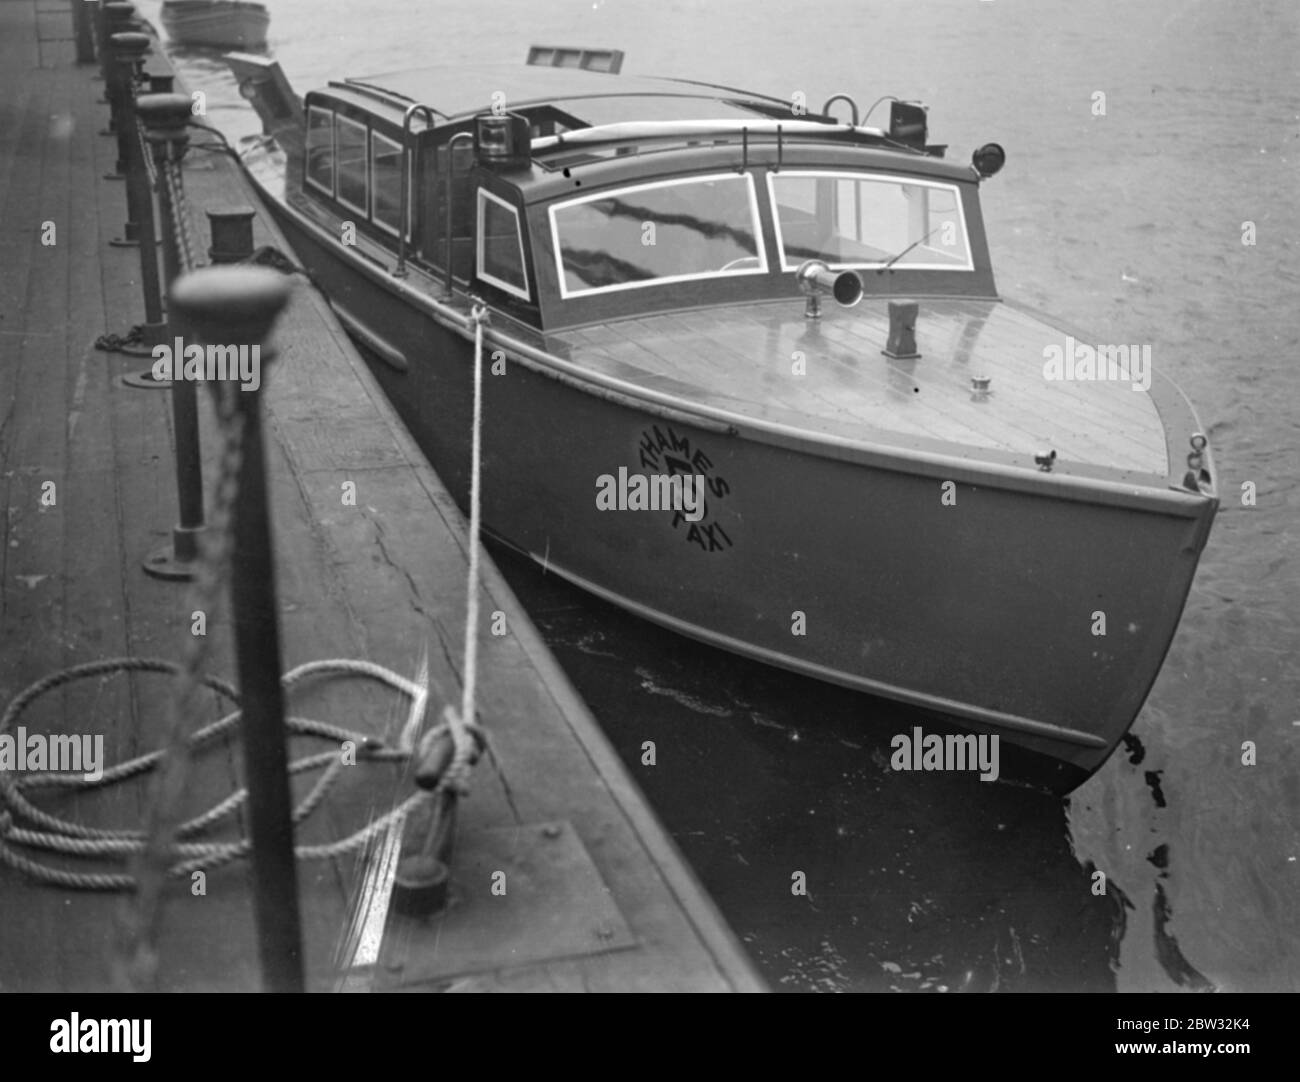 Thames Taxi Service Boot hat vollen Kurs Geschwindigkeit Studie auf der Themse . Die erste Flotte neuer Thames Steuer-Schnellboote, die in Kürze einen regulären Service auf der Themse beginnen, hat ihren ersten vollen Kurs-Versuch von Walton auf der Themse nach Chelsea. Das Boot kann elf Passagiere transportieren, und reisen mit einer Geschwindigkeit von 20 Knoten. Es ist mit einem 115 PS Sechszylinder-Motor und allen neuesten Feuergeräten ausgestattet. Es ist 35 Meter lang. Das neue Speedboot Thames Taxi . Mai 1932 Stockfoto